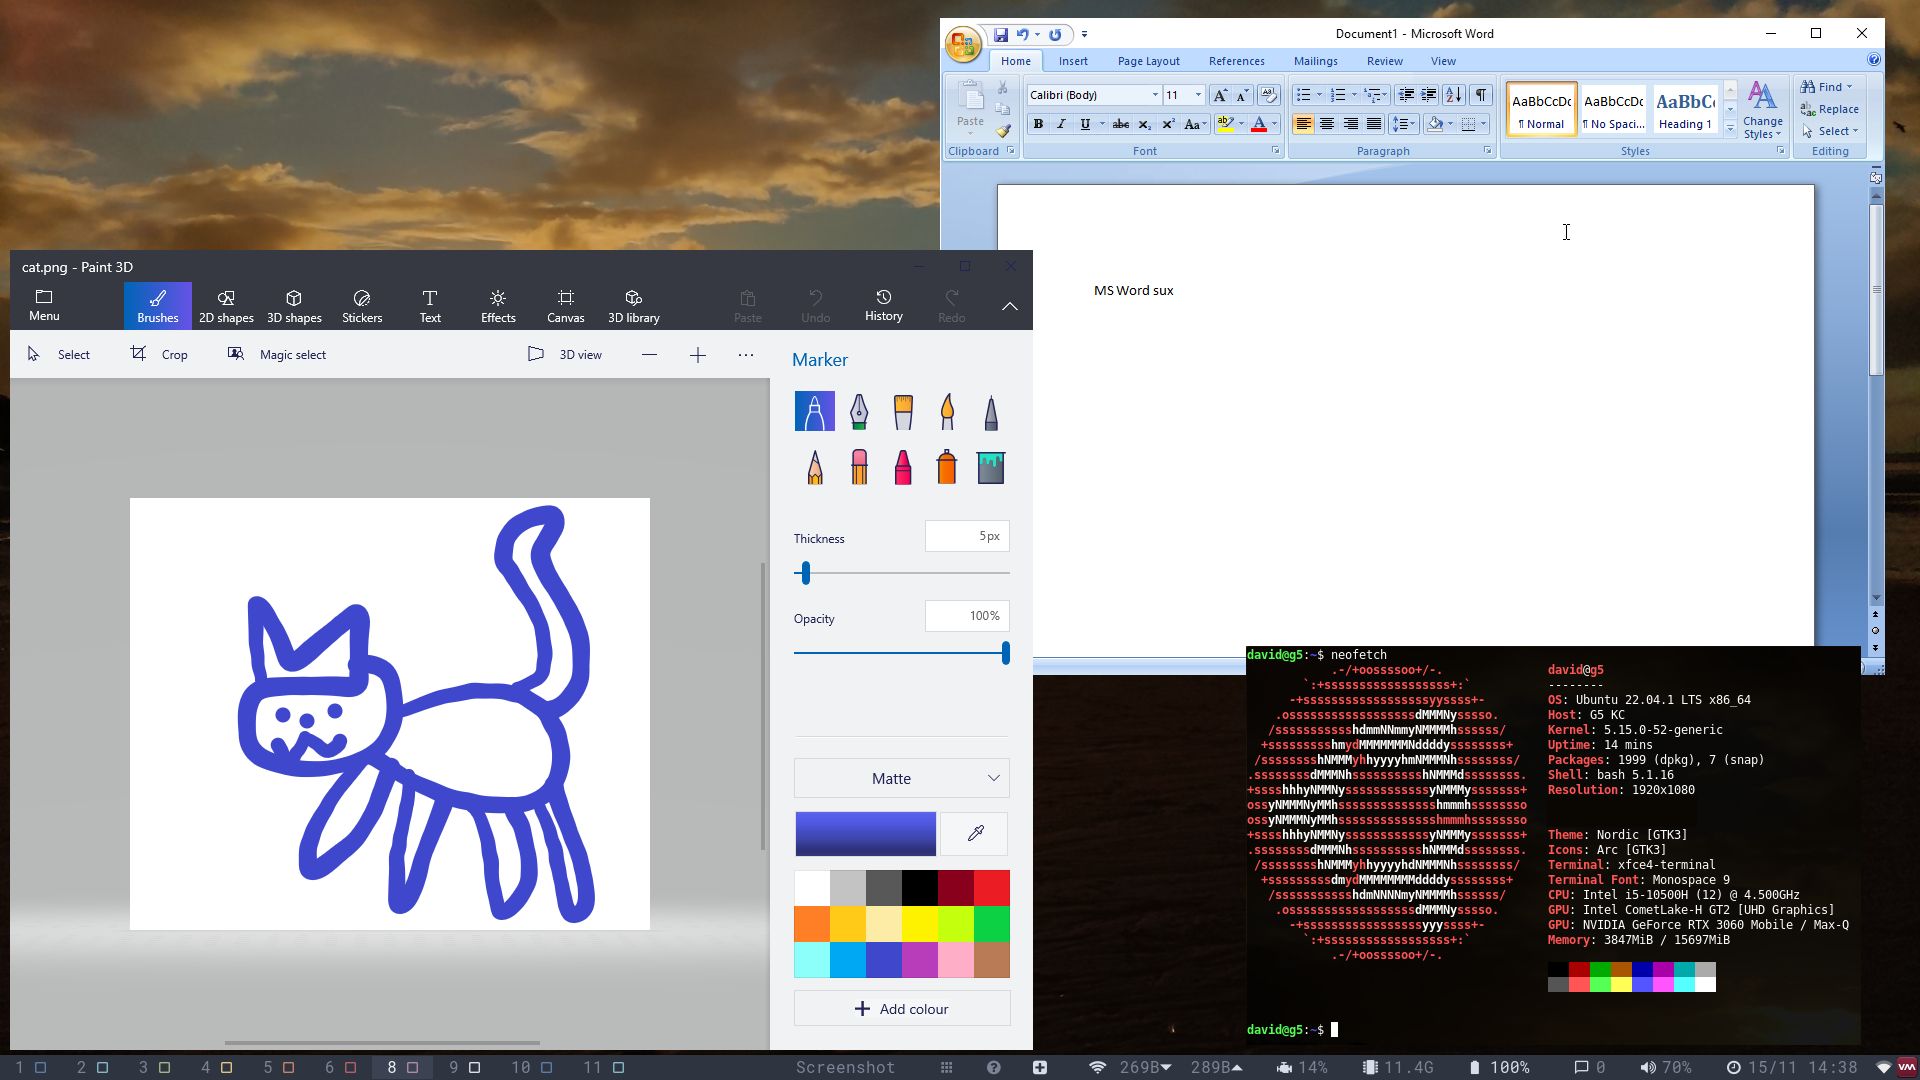 winapps en linux incluyendo word 97 y Paint 3D - con mala imagen de un gato